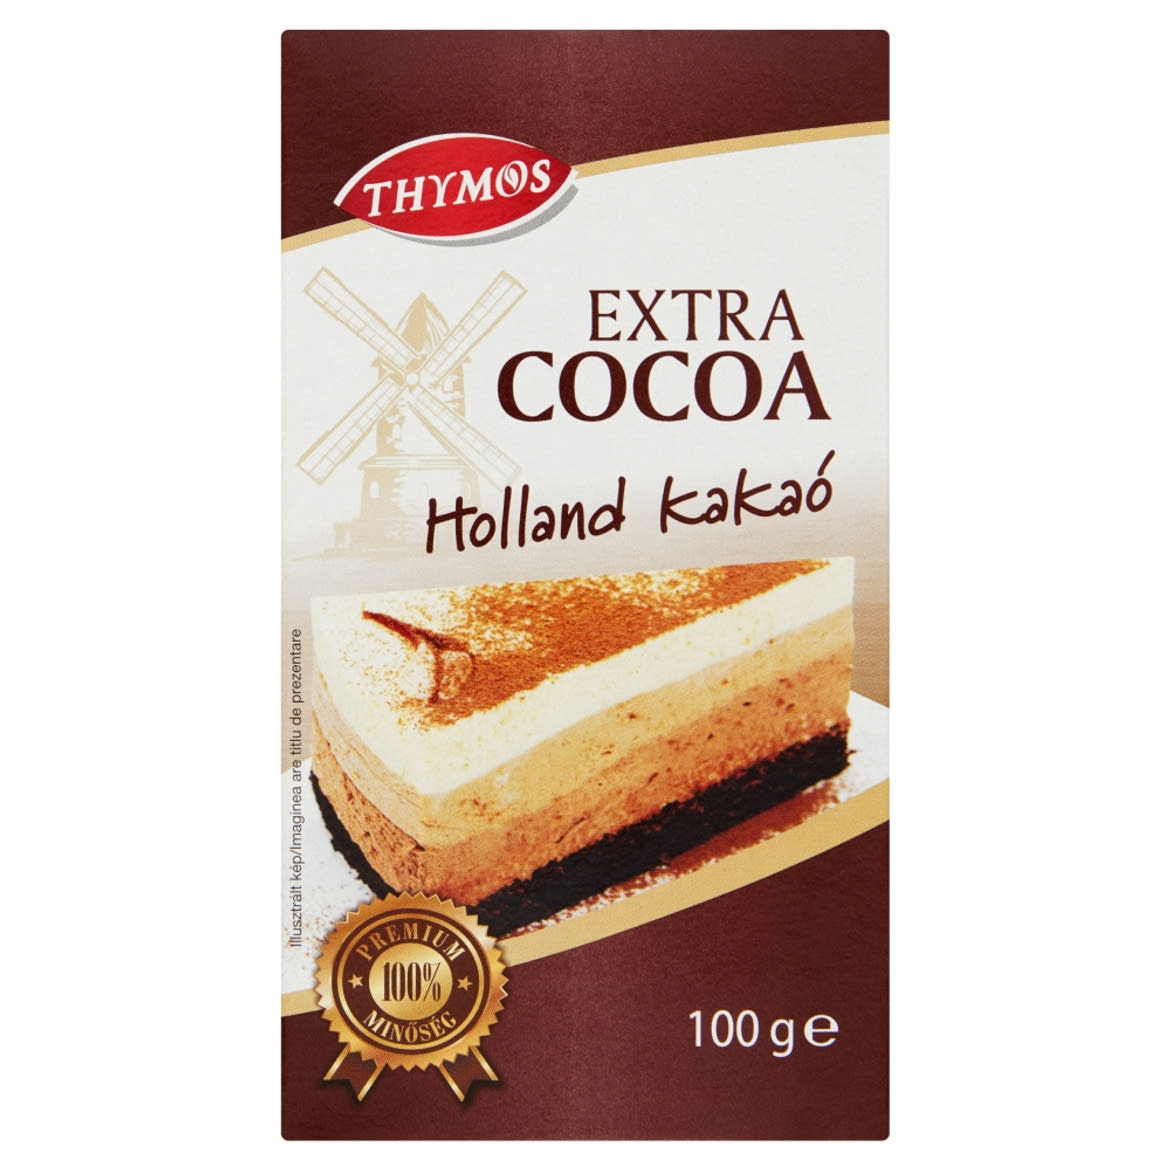 Thymos Extra Cocoa holland kakaópor